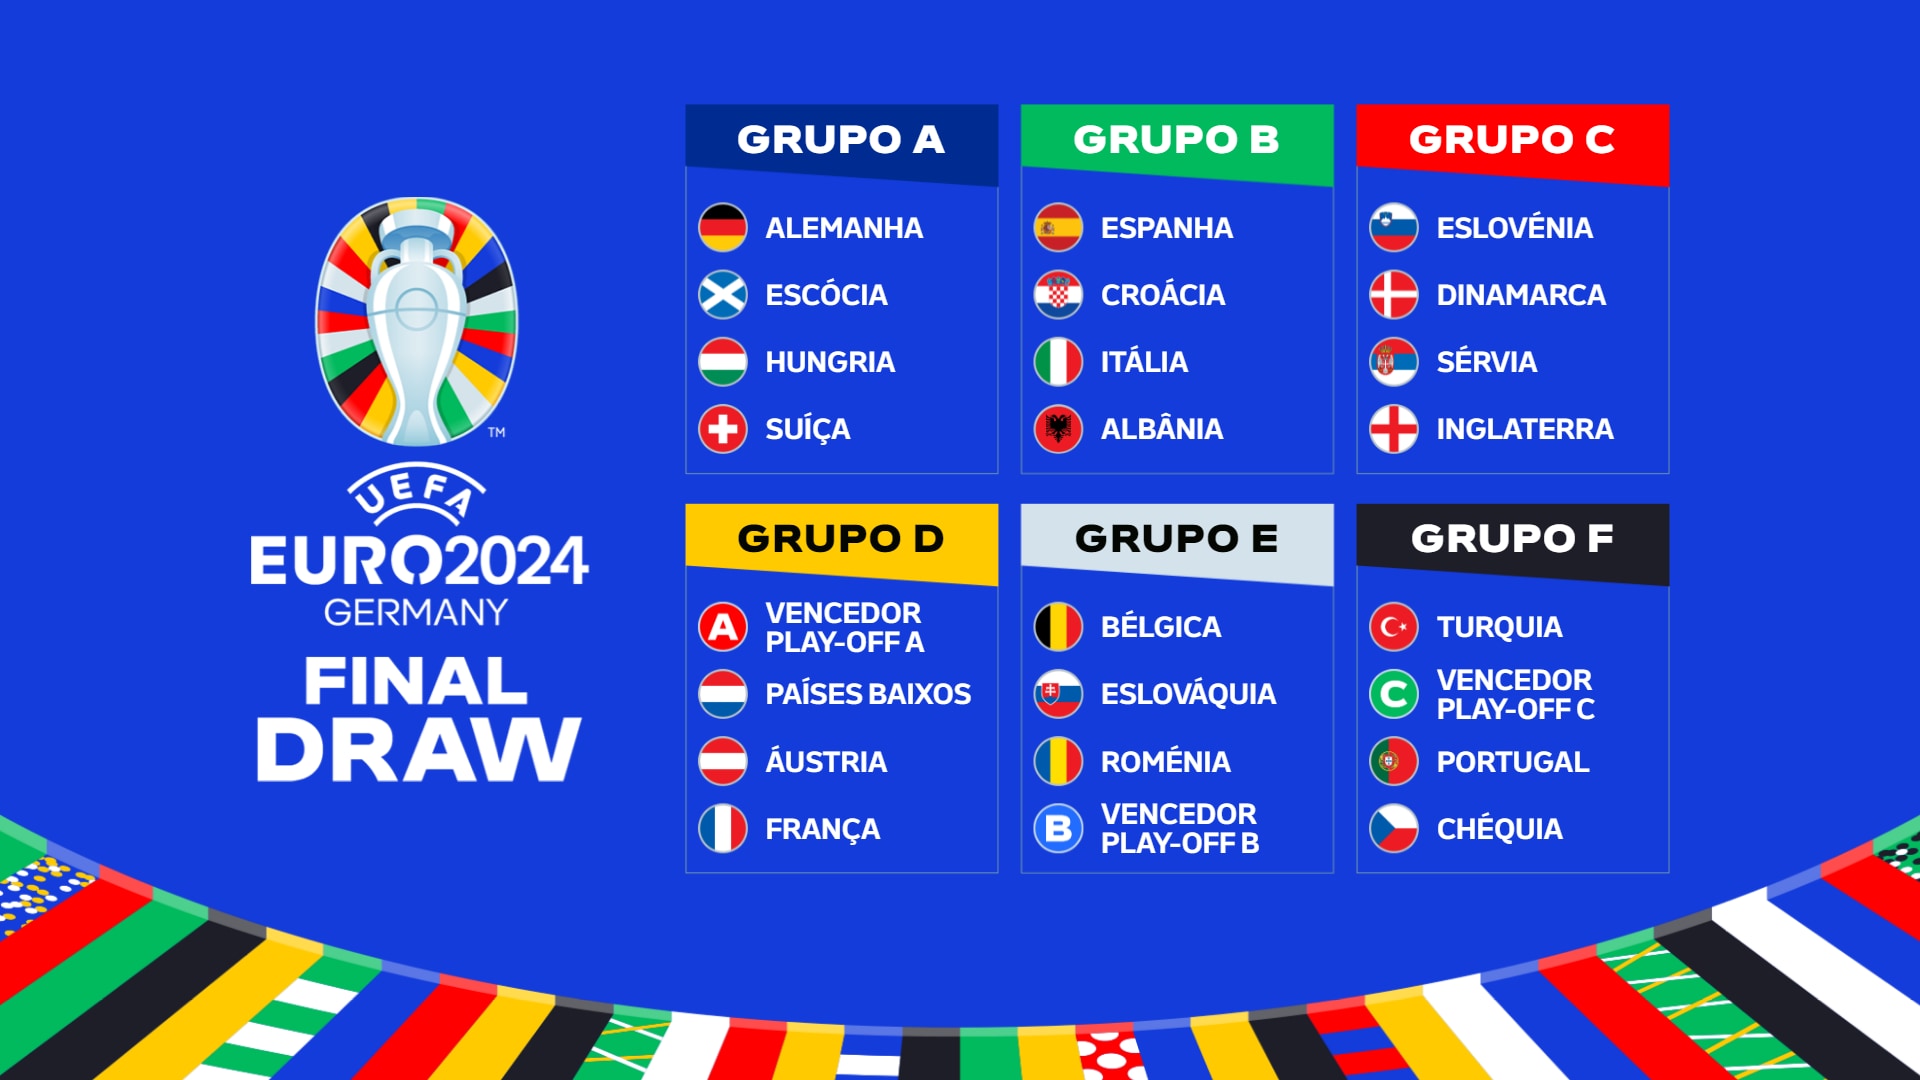 Sorteio da fase de grupos do EURO 2024 Portugal com Turquia, Chéquia e